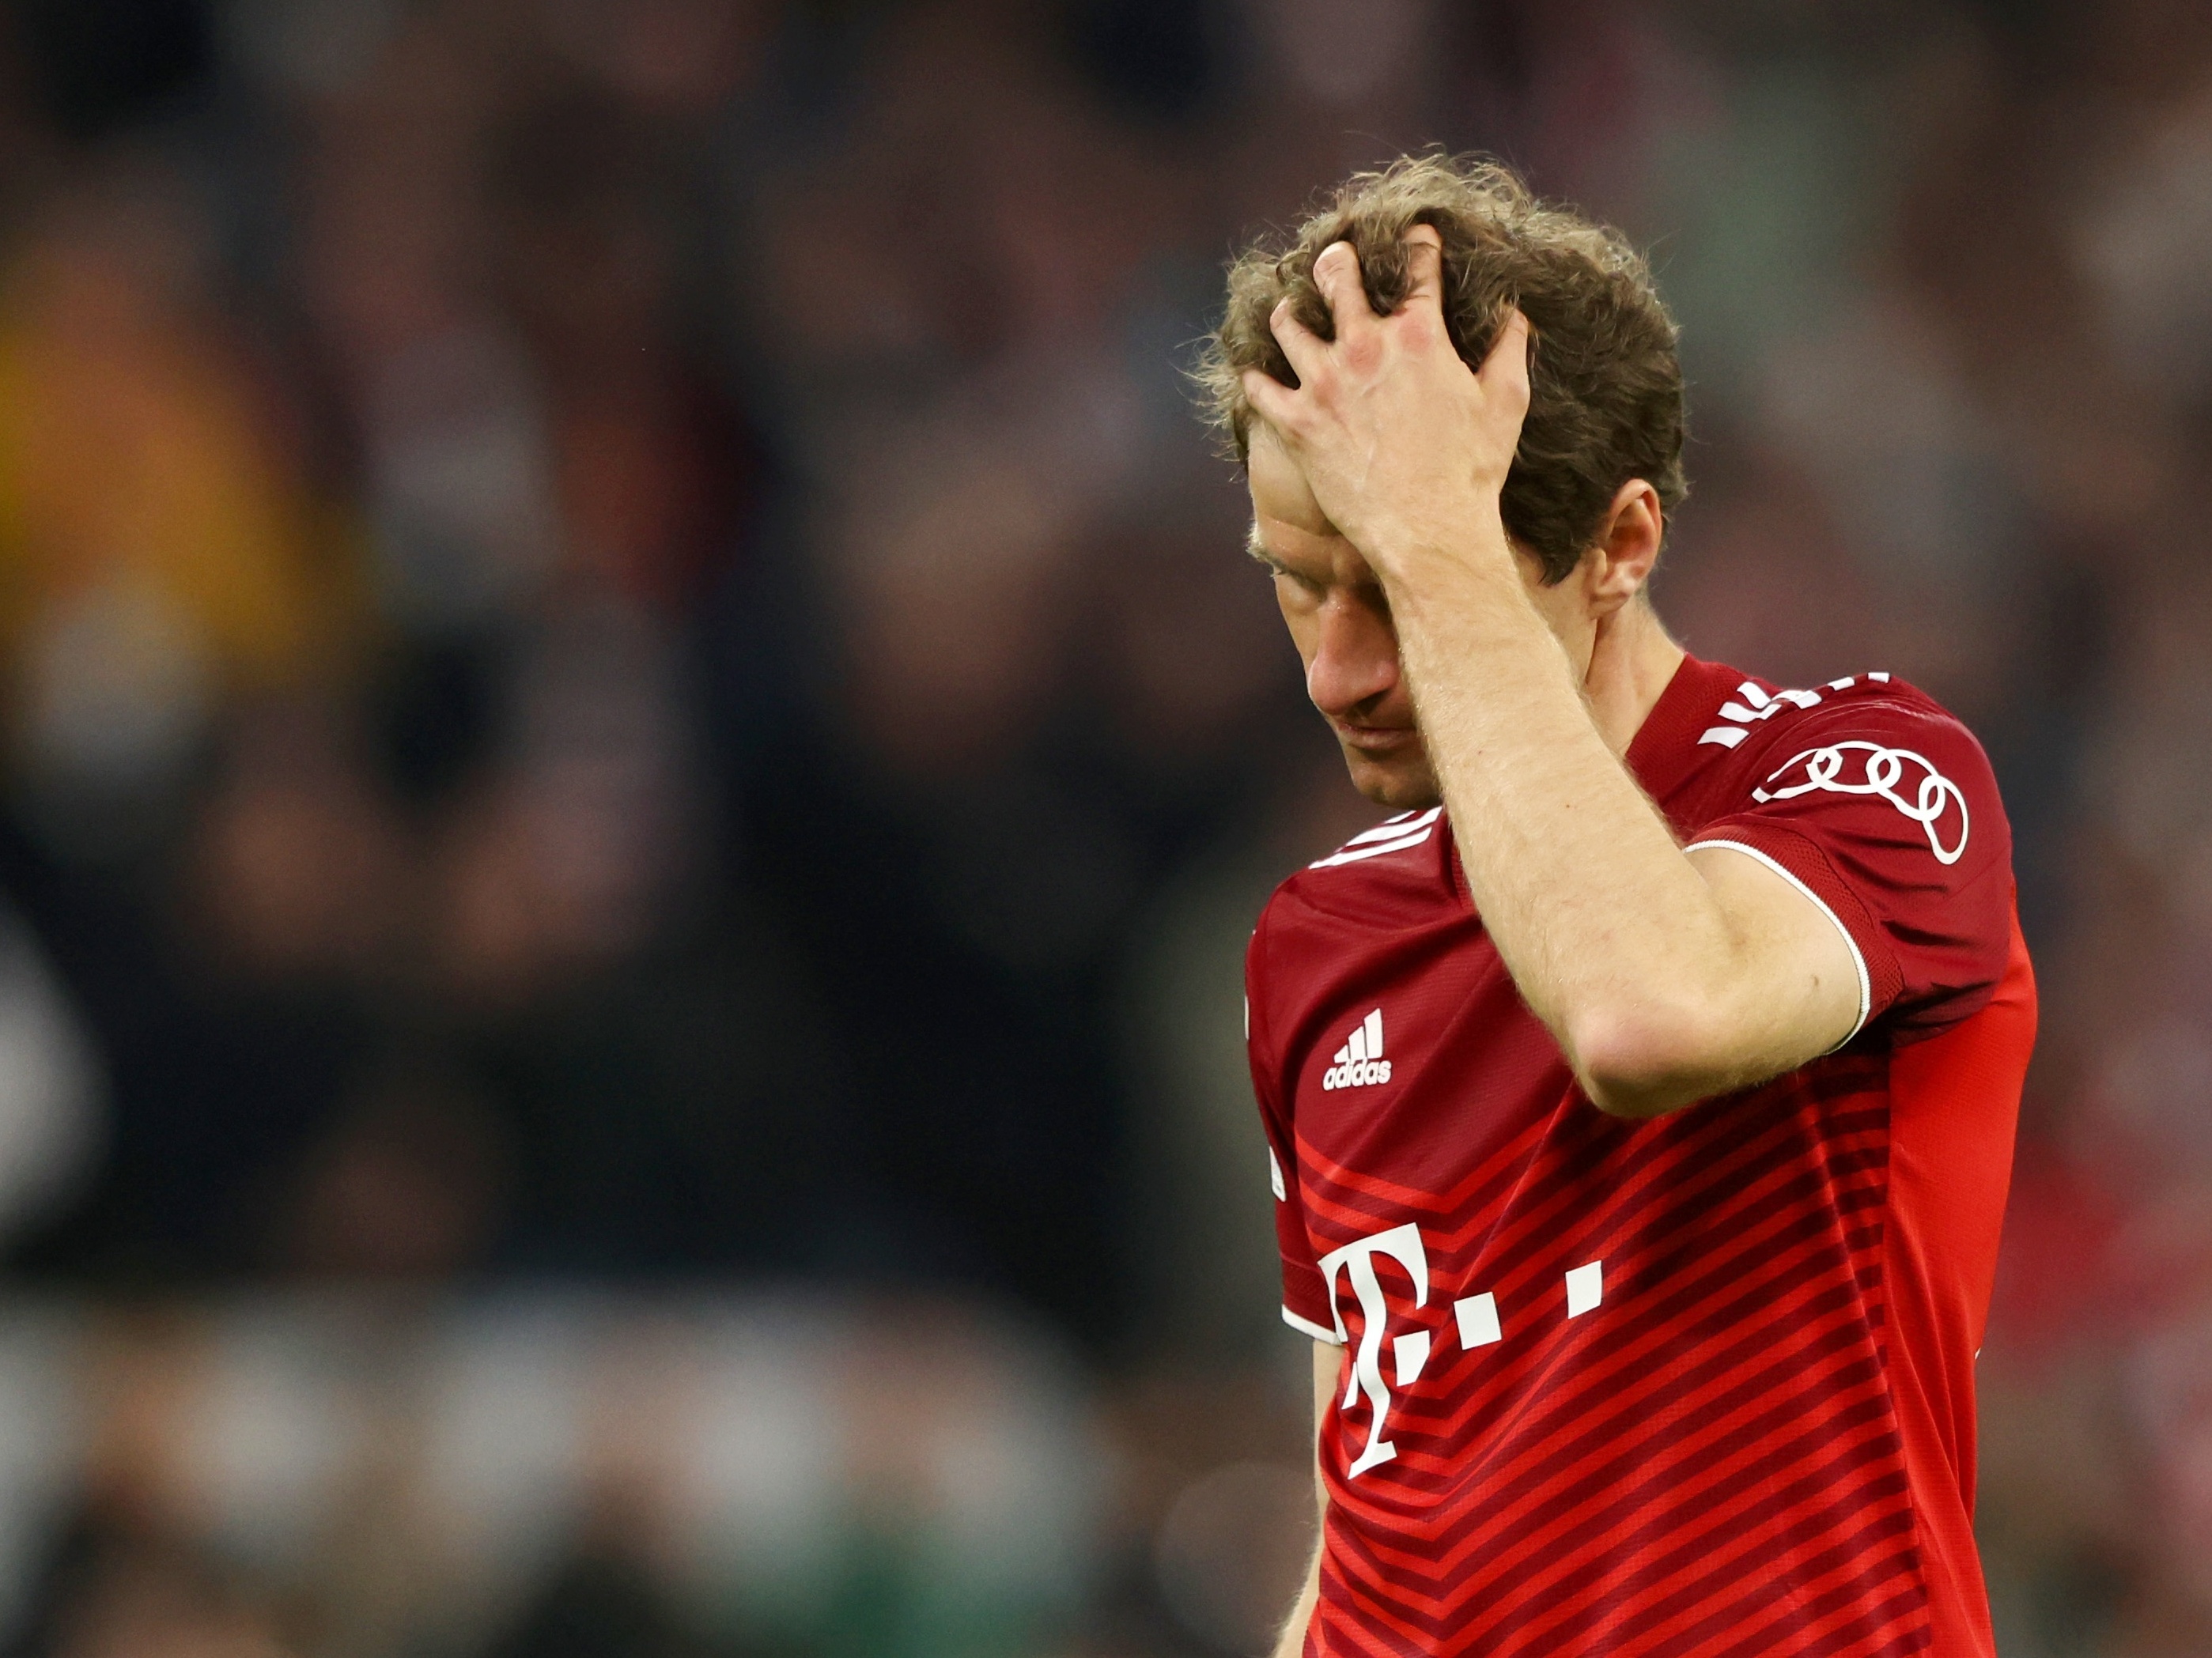 Após agressão, torcedores do Munique 1860 são obrigados a comprar camisa do  Bayern - ESPN